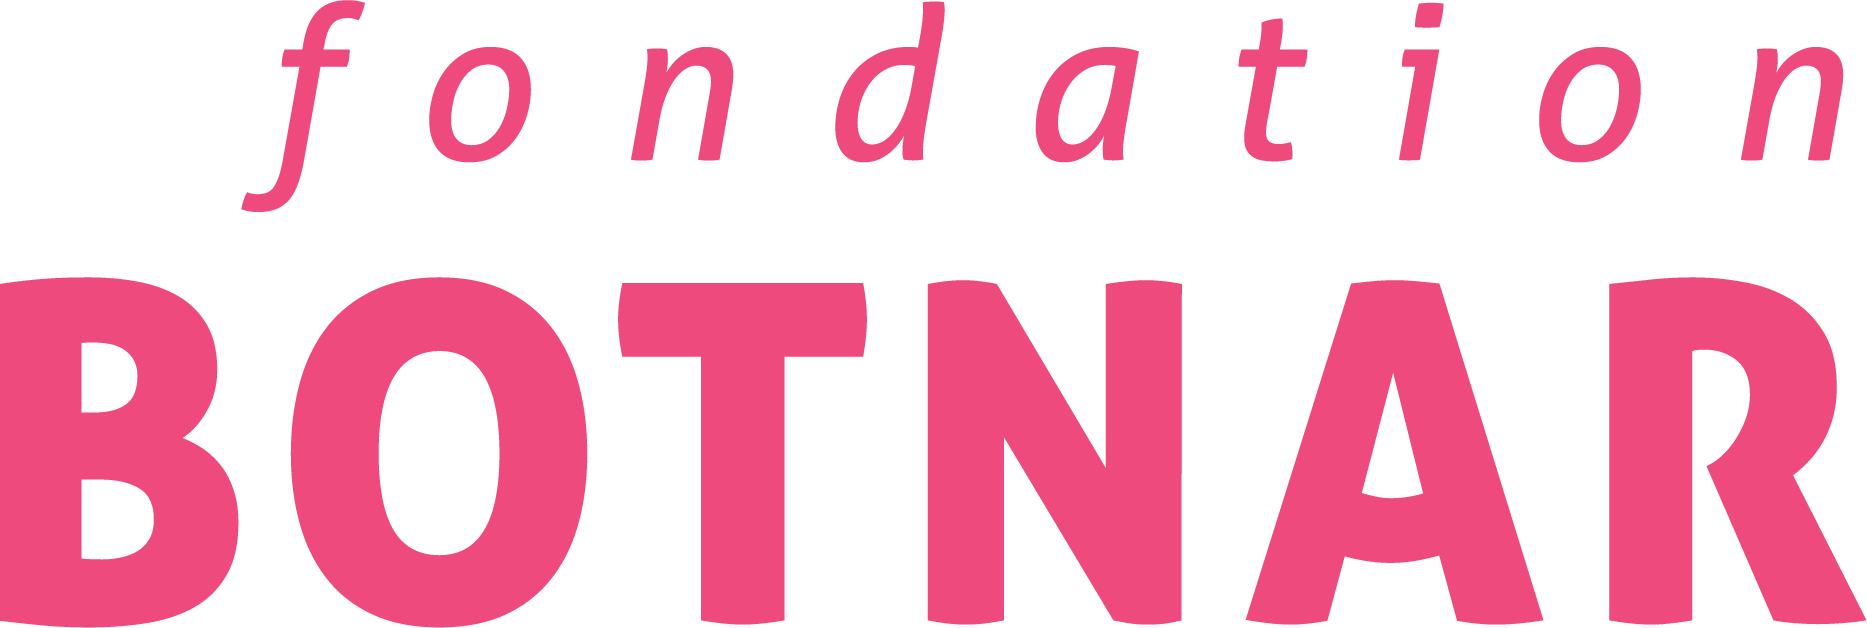 Partner logo Fondation-Botnar